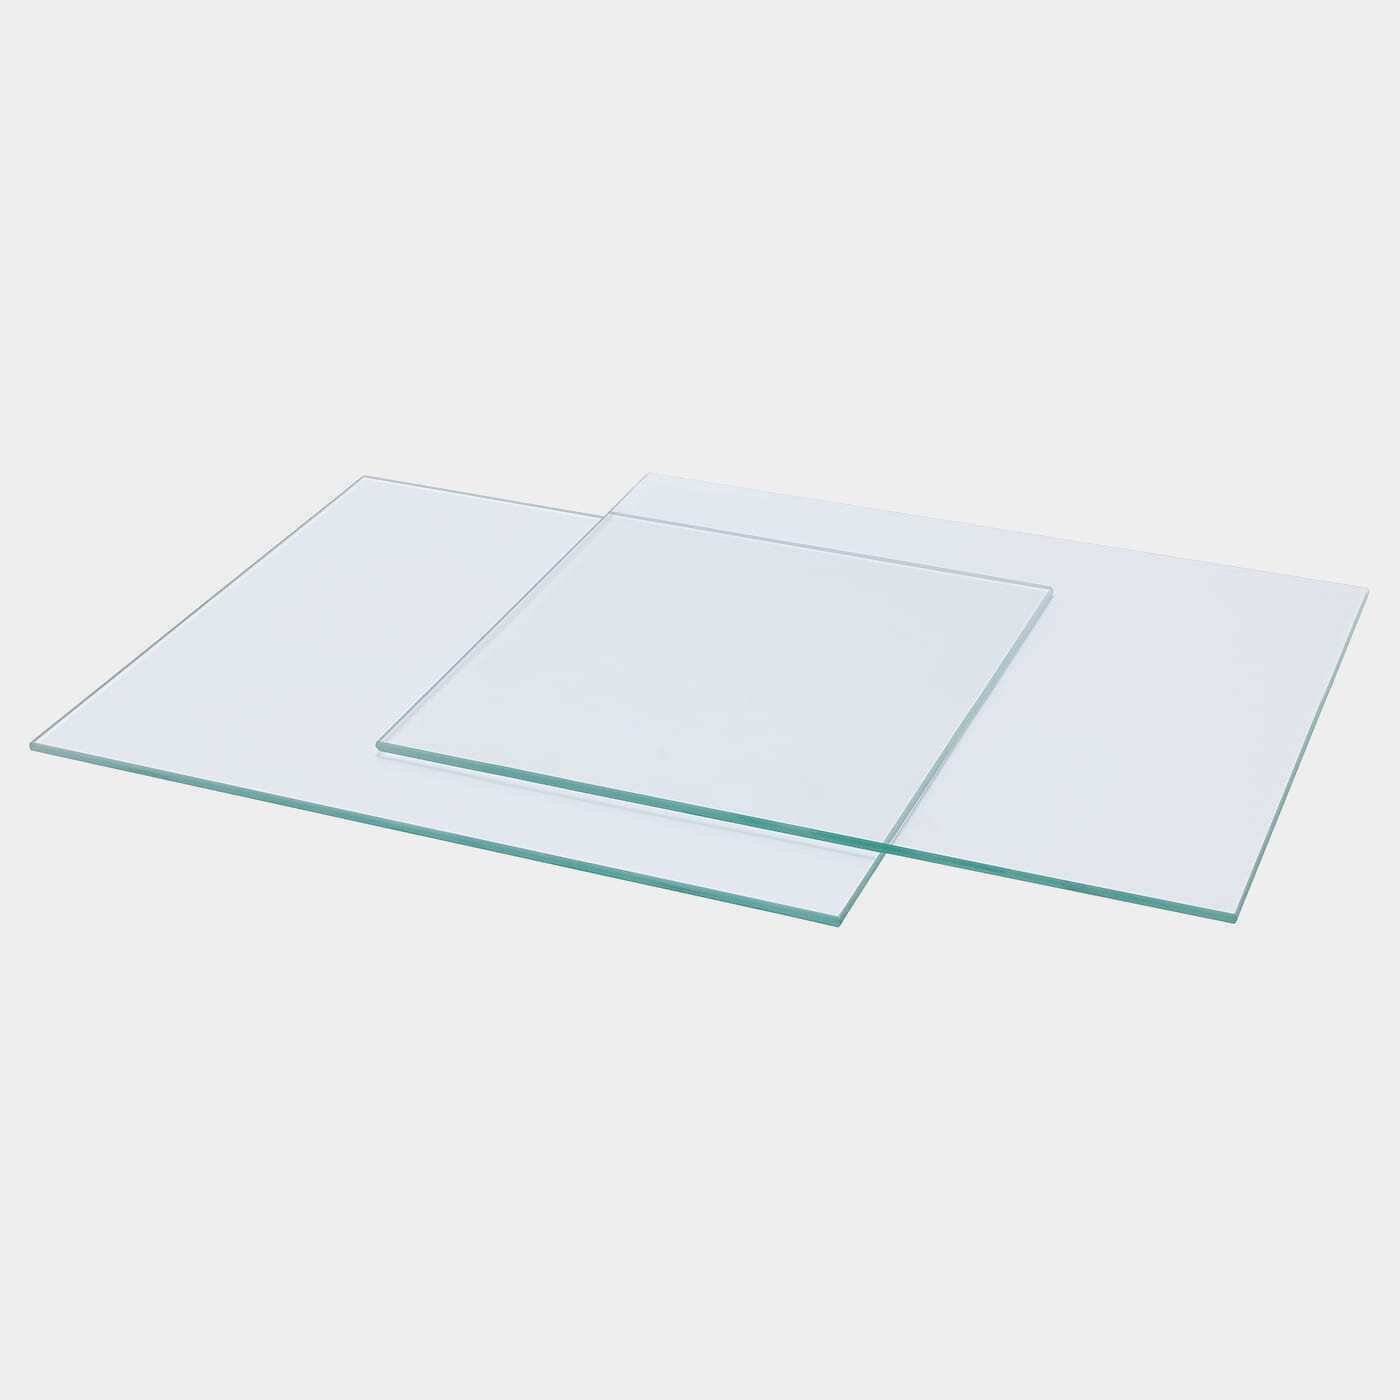 KALLAX Glaseinlegeboden  -  - Möbel Ideen für dein Zuhause von Home Trends. Möbel Trends von Social Media Influencer für dein Skandi Zuhause.